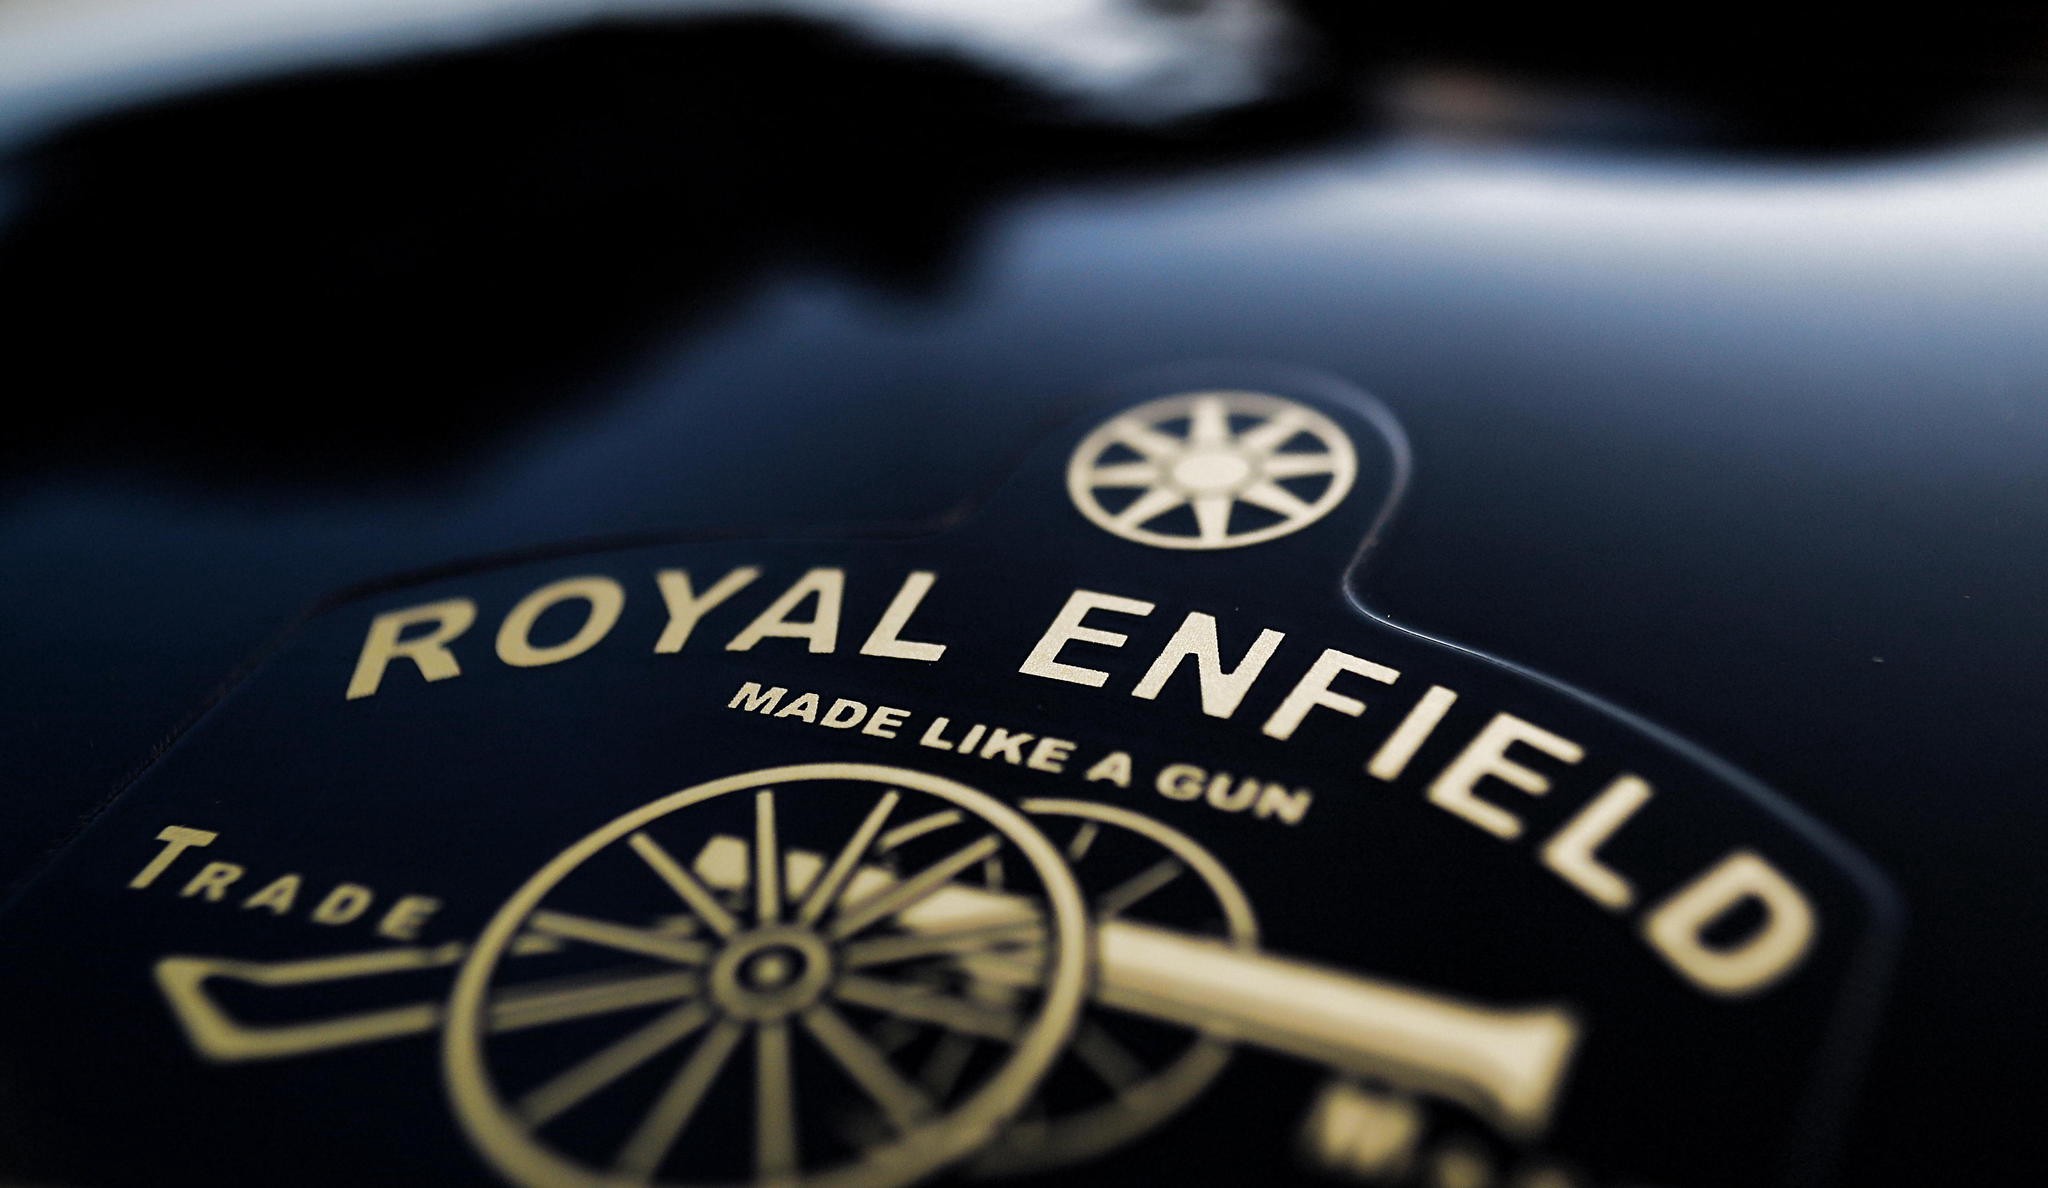 royal-enfield-logo-elle-man-f